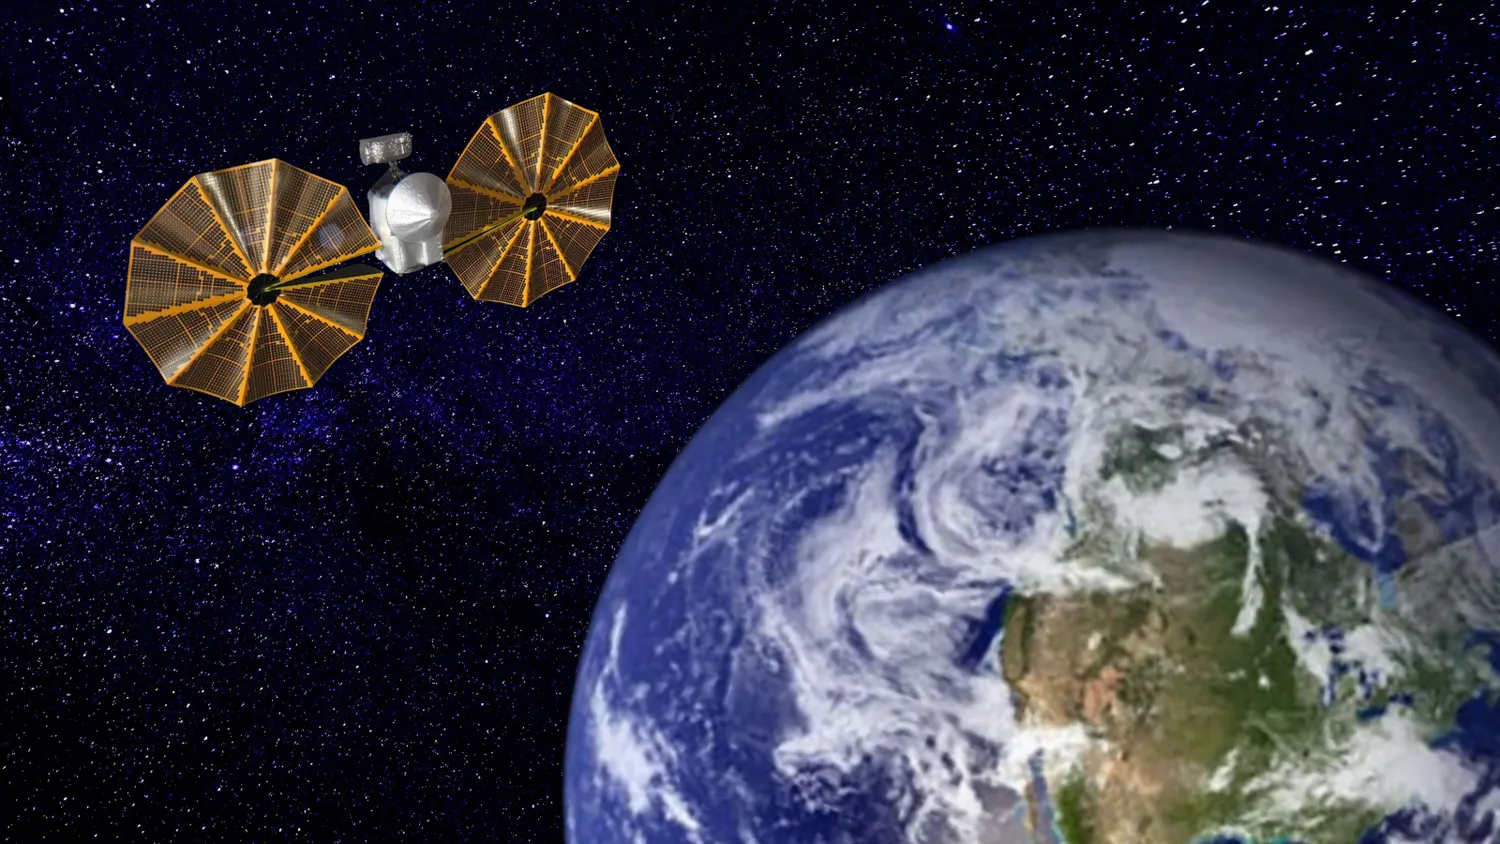 Mehr über den Artikel erfahren Triebwerksbrand schickt NASA-Sonde Lucy auf Asteroidenjagd zurück zur Erde